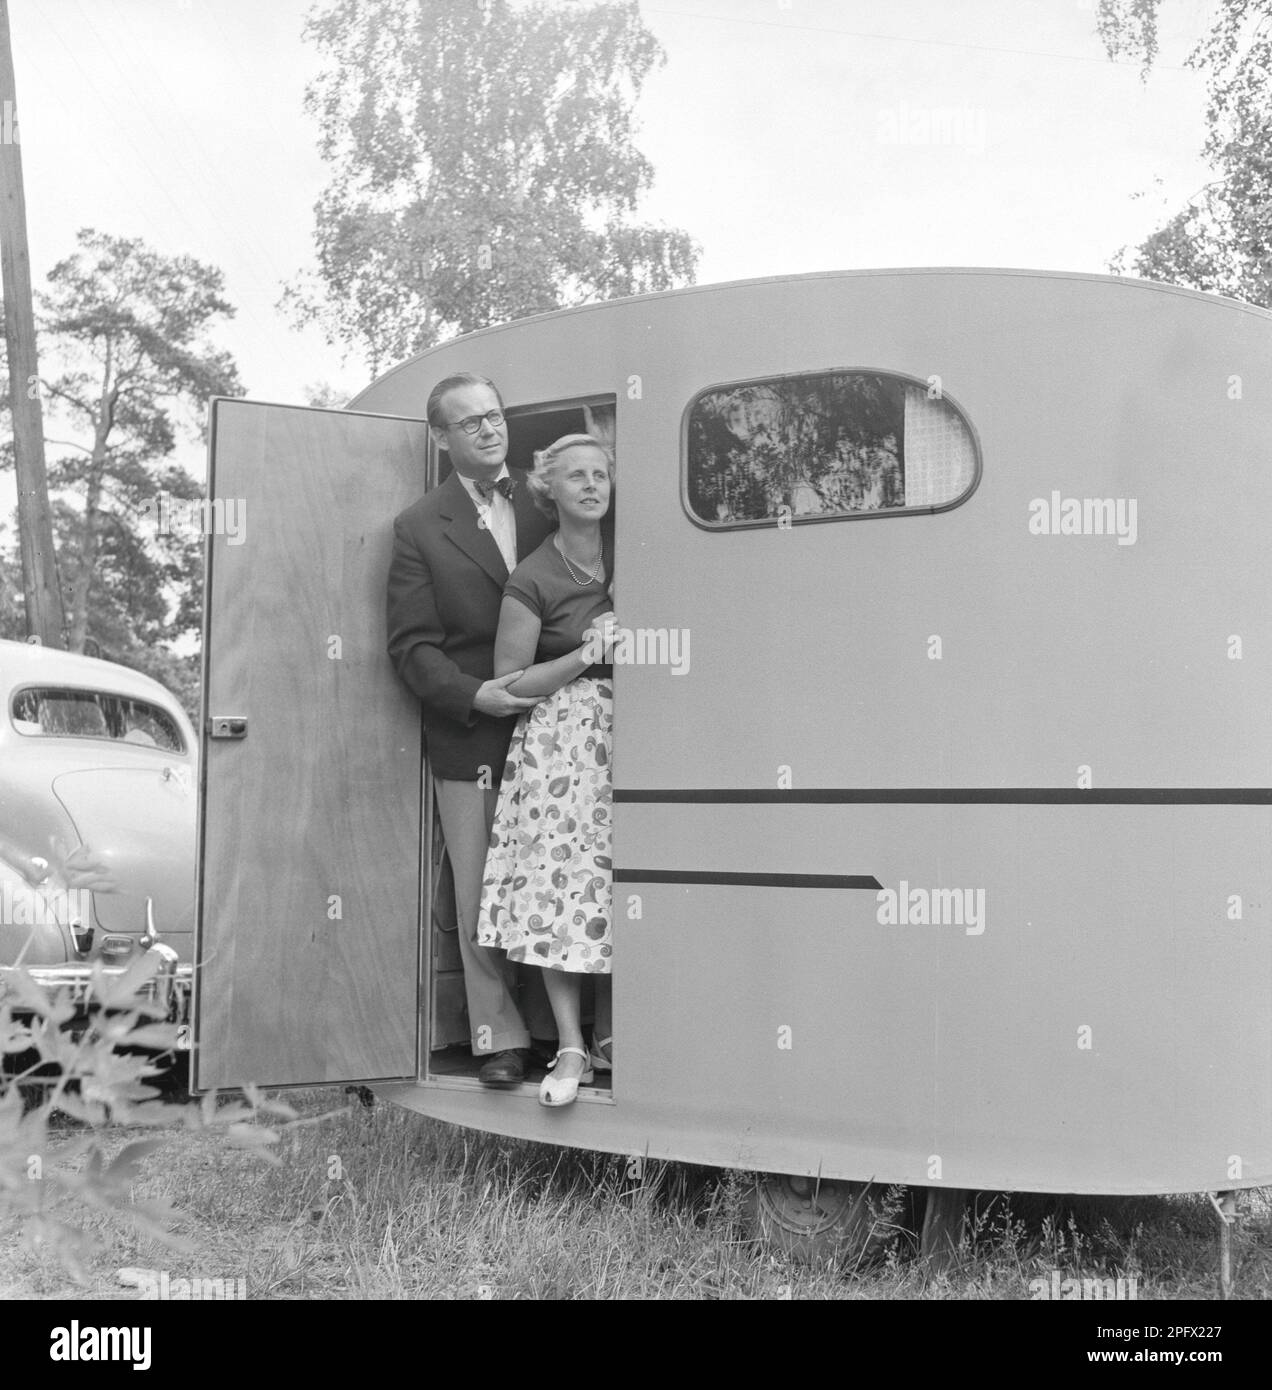 Caravane avec le propriétaire Sten Hesser et sa femme, debout dans la porte. L'image peut être considérée pour illustrer le temps dans le 1950s où les personnes en plus grand nombre avaient une voiture, et avec elle des possibilités de Voyage et de vacances en Suède juillet. 1953. Réf. SSMSAX000433L Banque D'Images